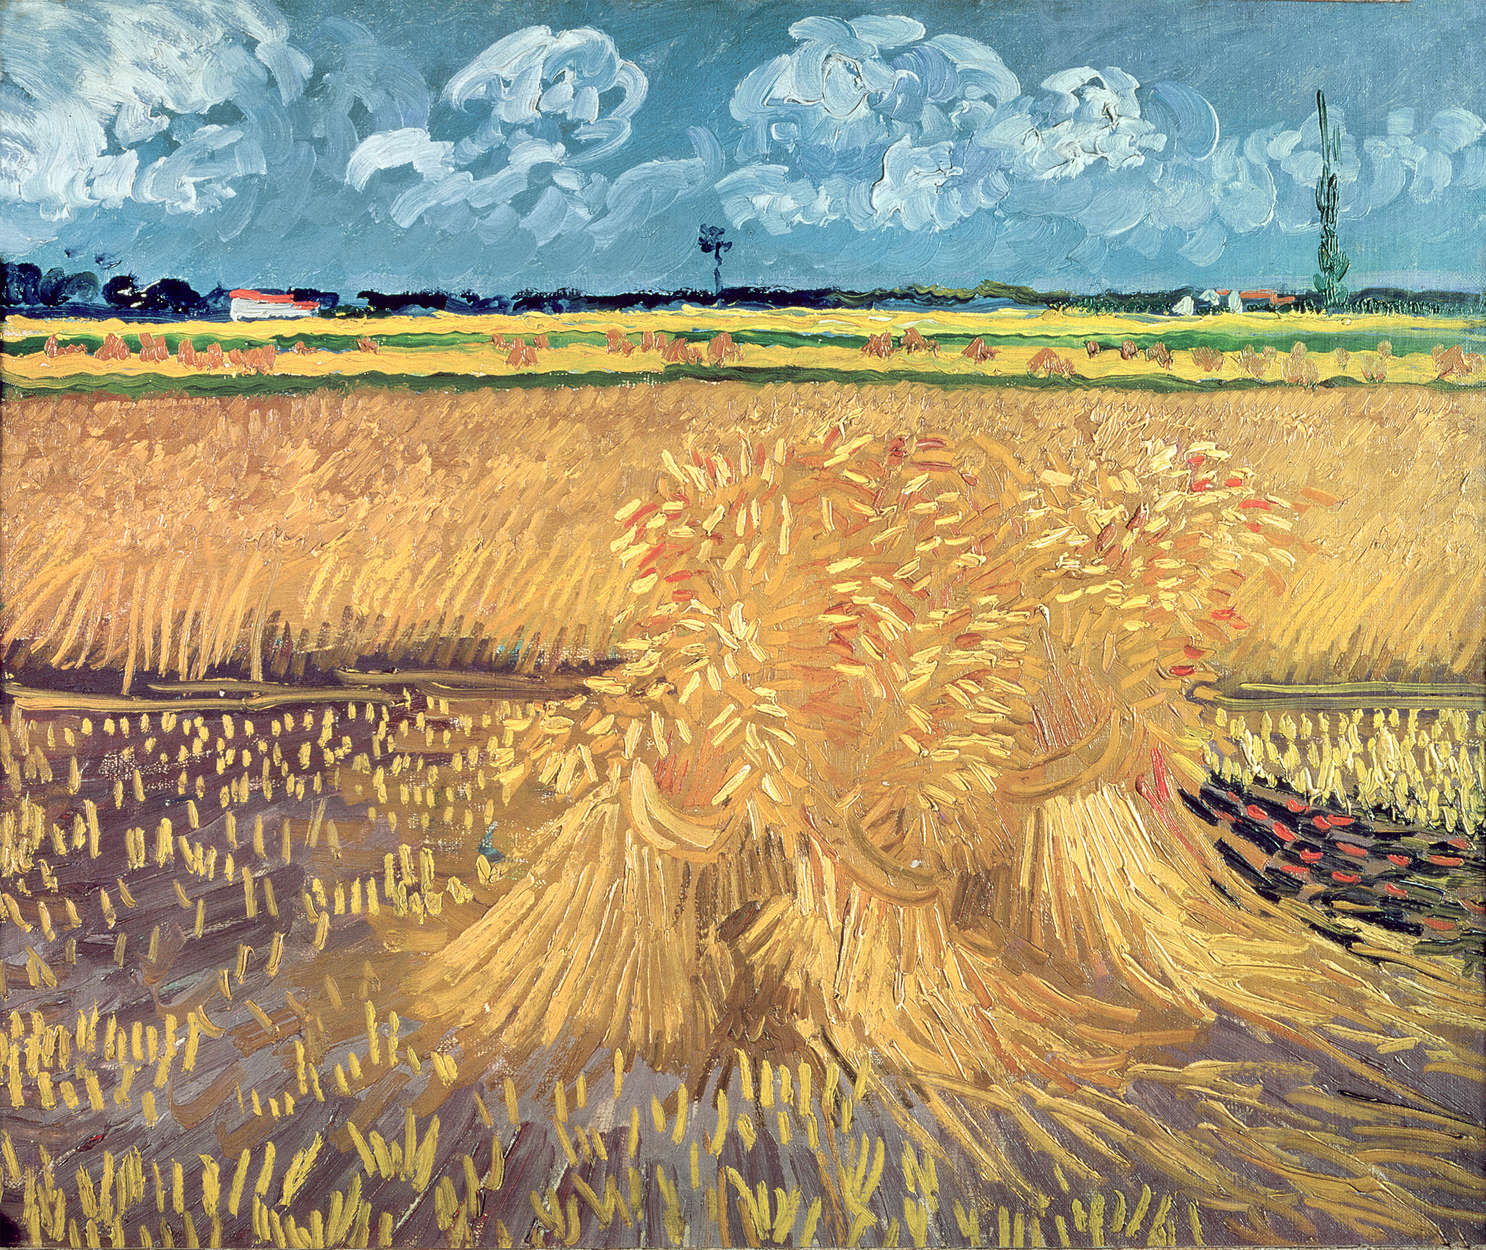             Muurschildering "Kraaien boven korenveld" van Vincent van Gogh
        